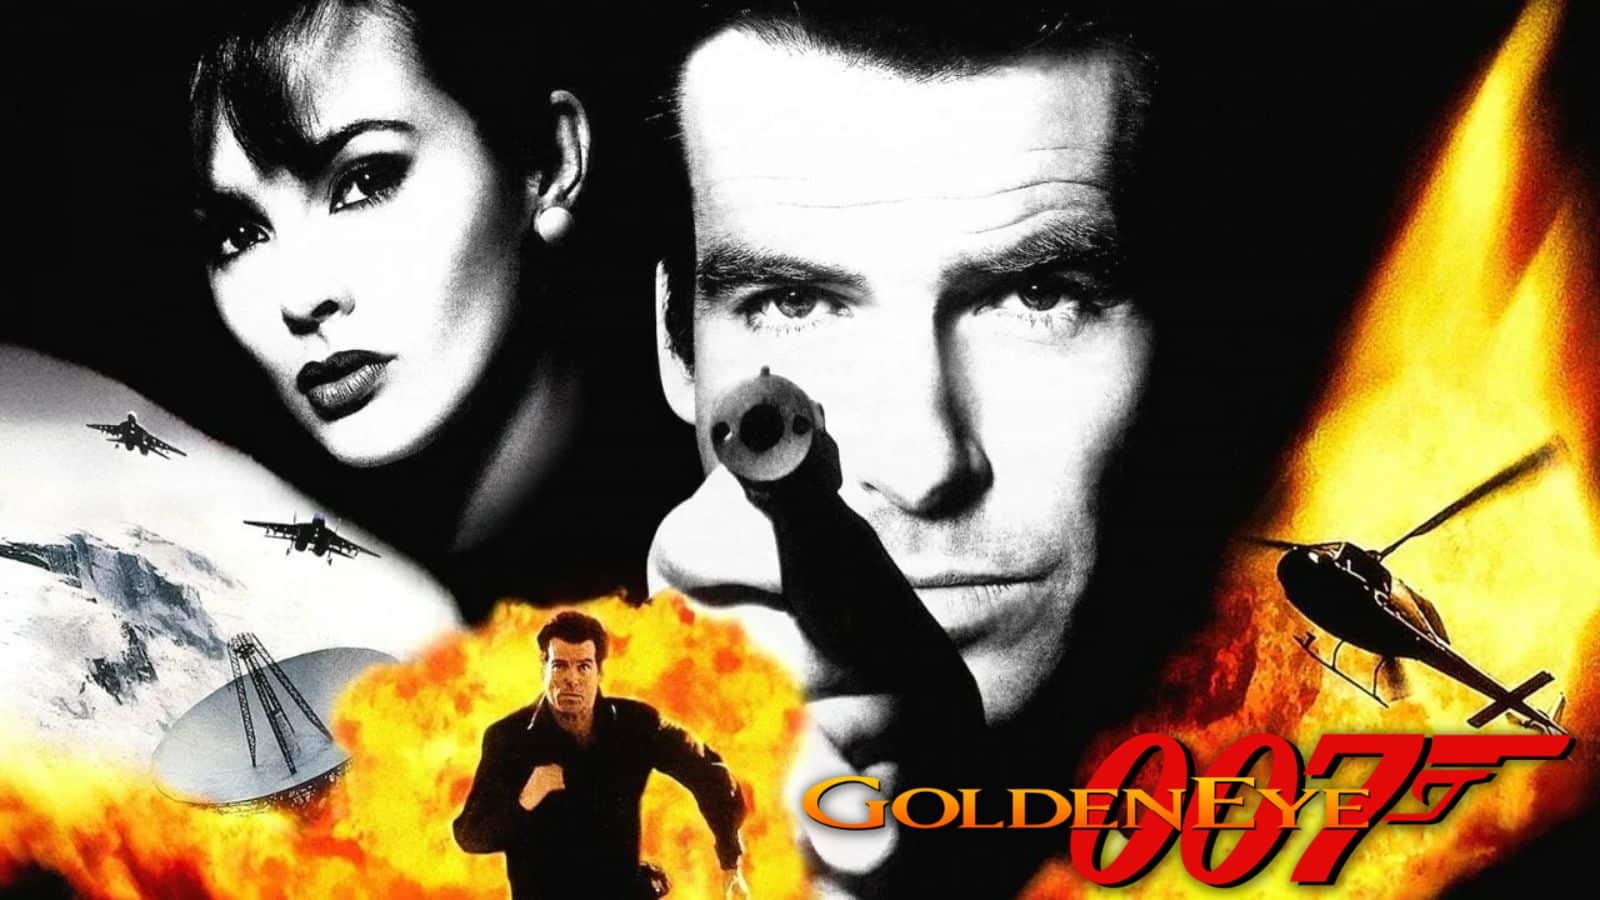 Nintendo look set to break internet with James Bond GoldenEye 007 remaster  - Dexerto